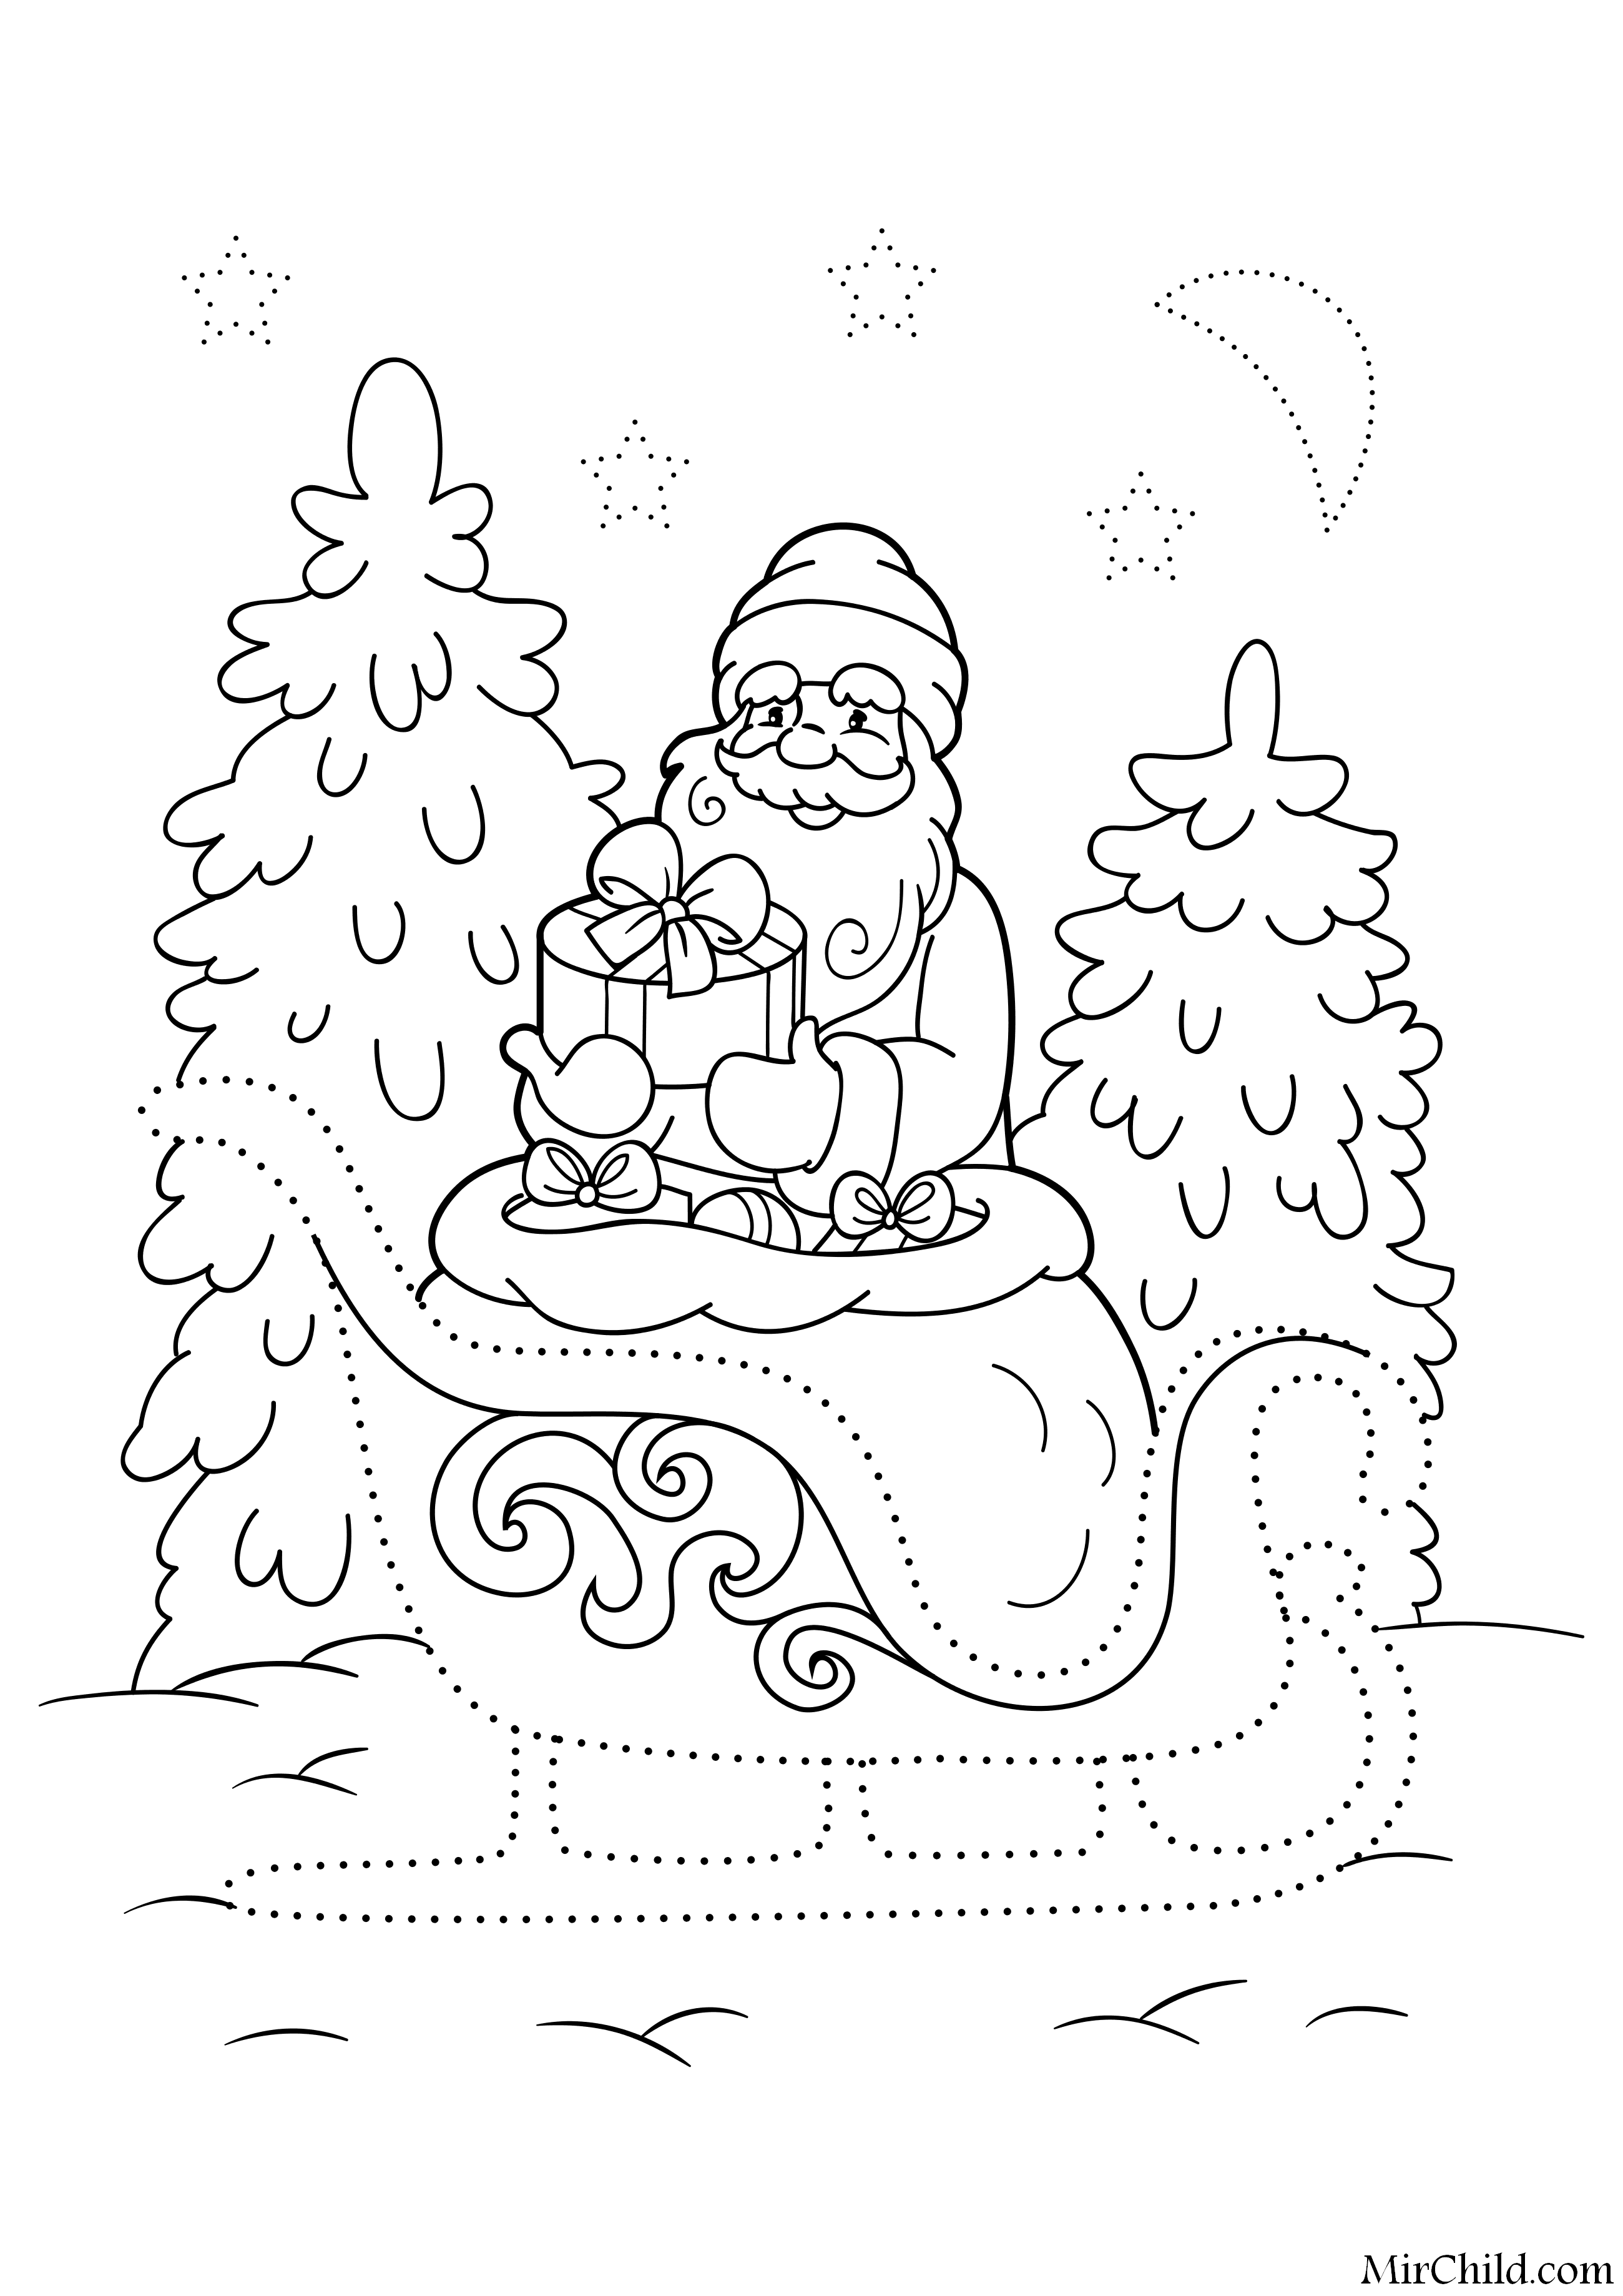 Дед Мороз раскраска для детей